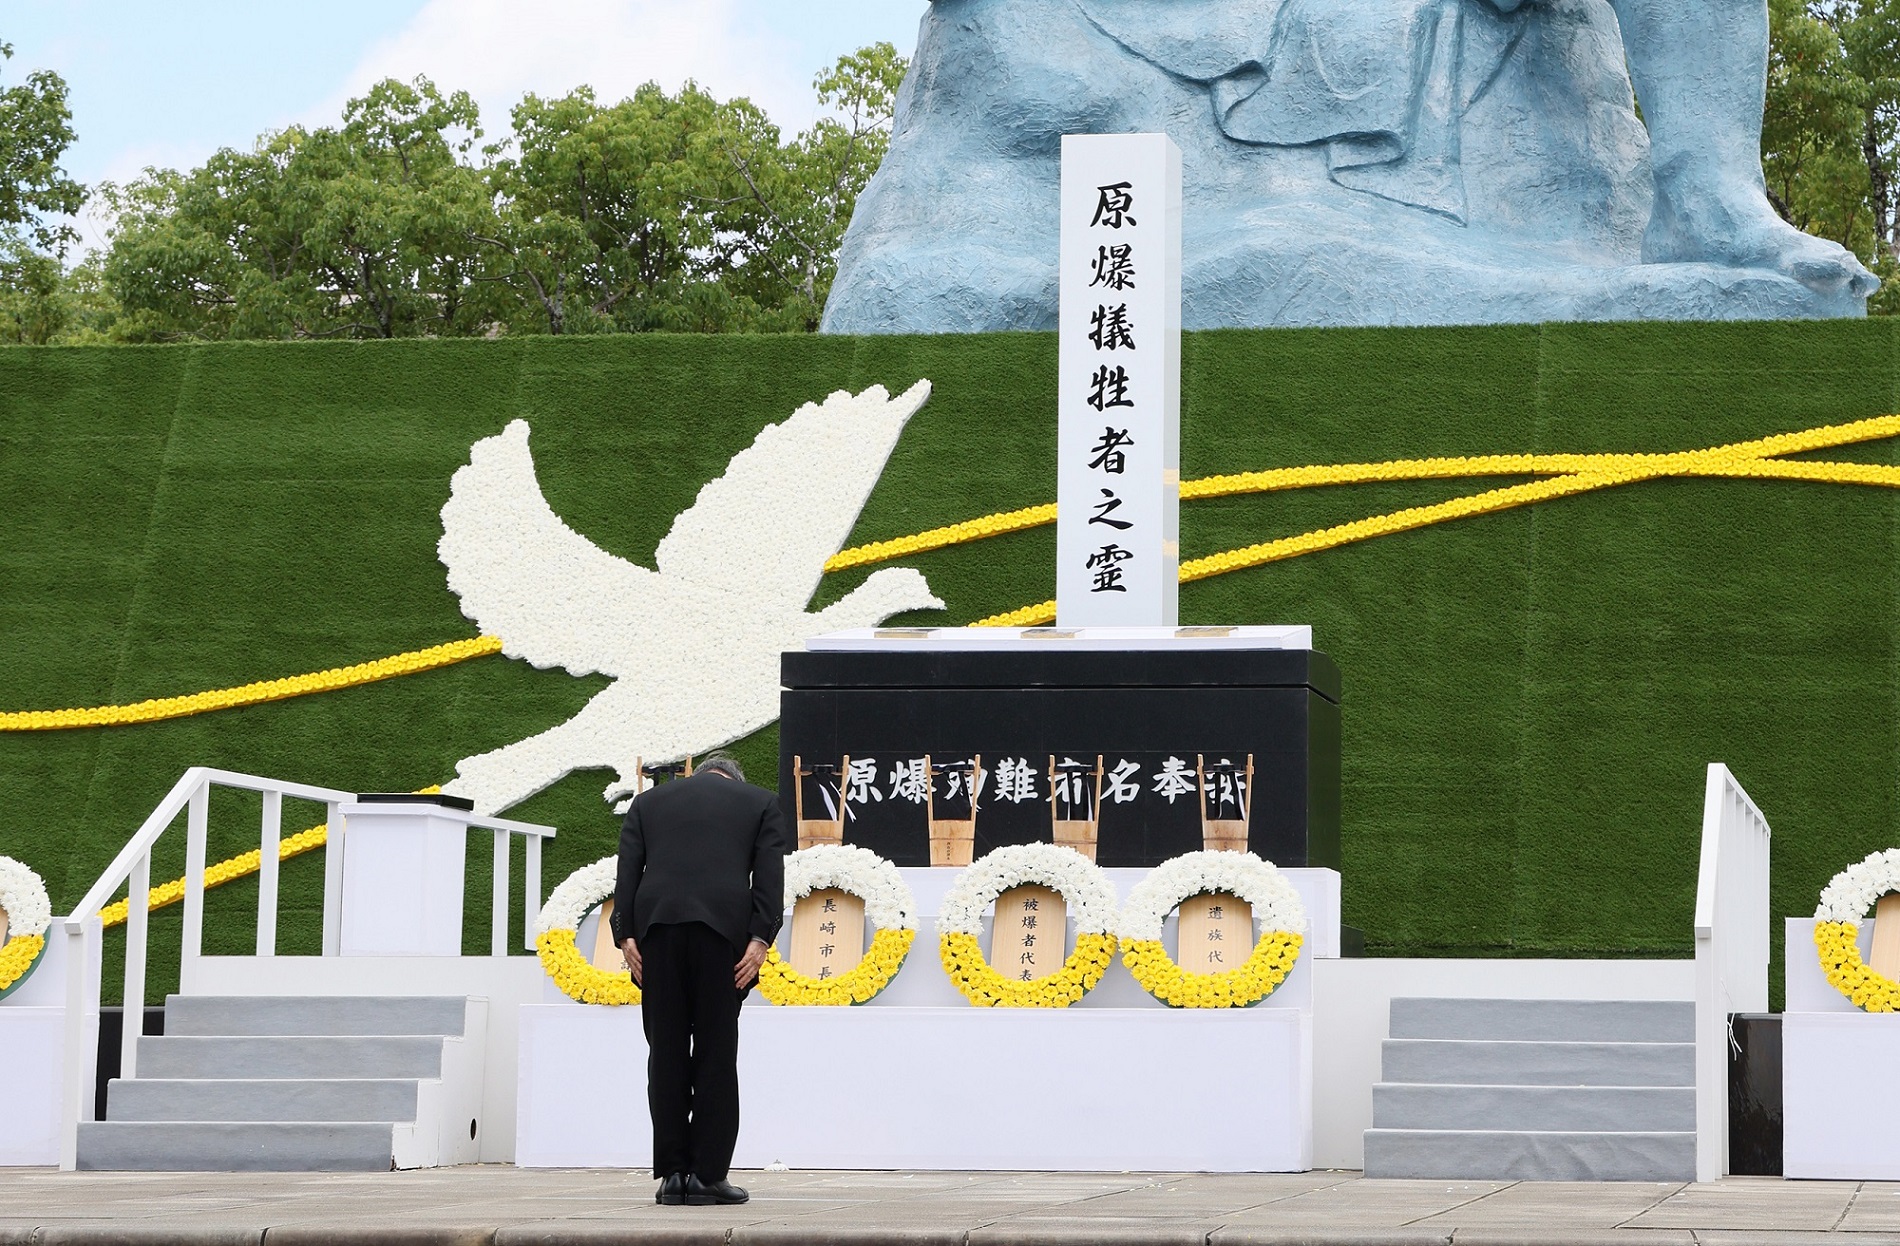 長崎原爆犠牲者慰霊平和祈念式典参列等